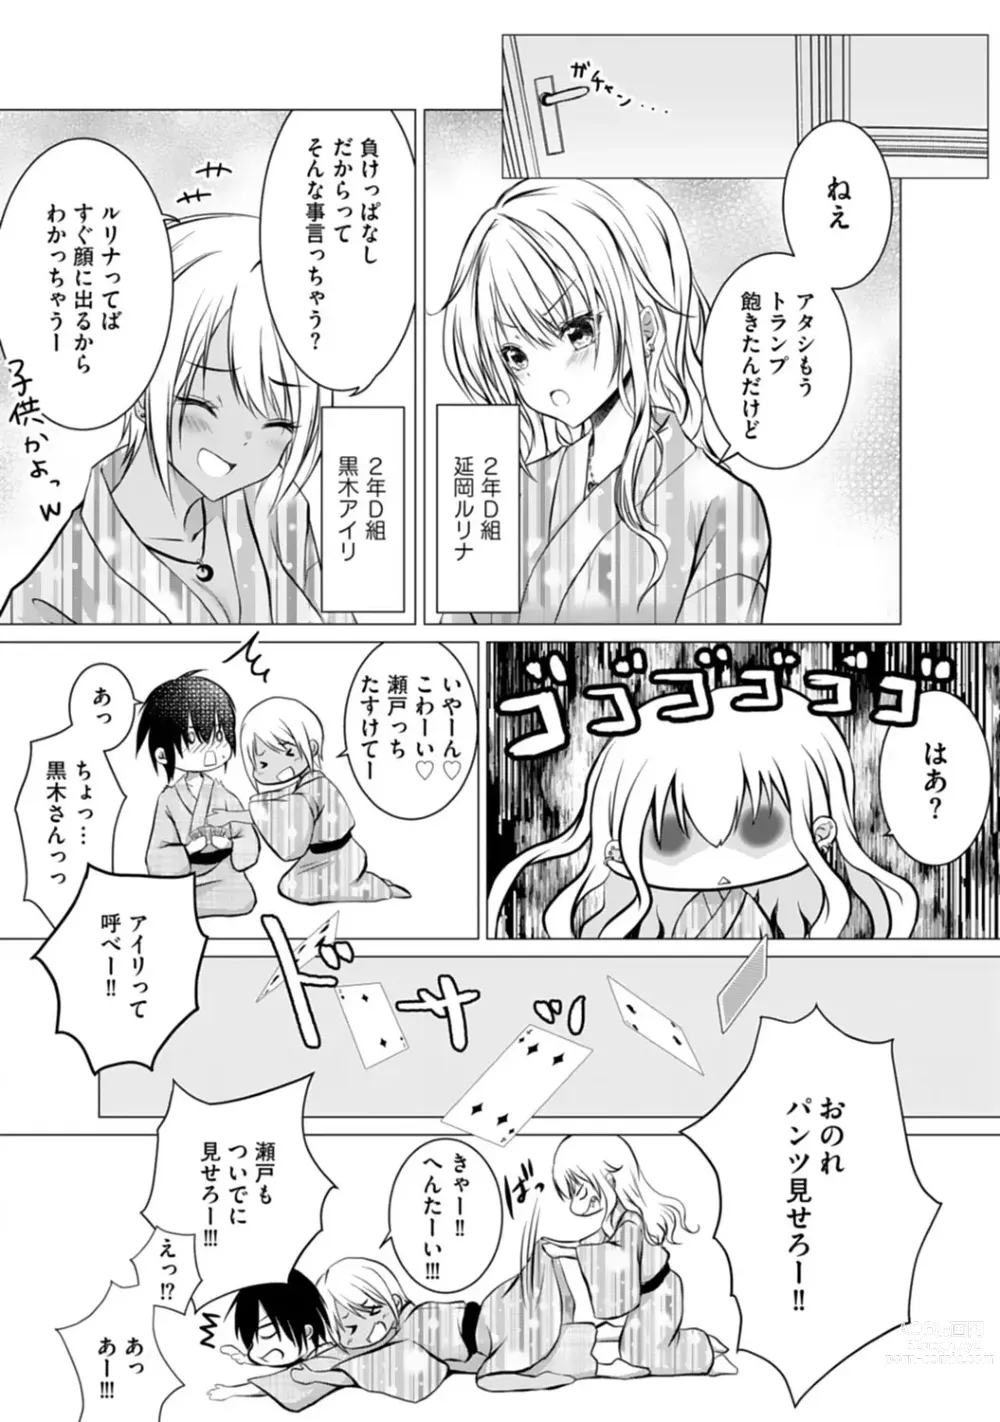 Page 16 of manga Bocchi no Boku demo, Kuzu no Yarichin ni Nareru tte Honto desu ka?